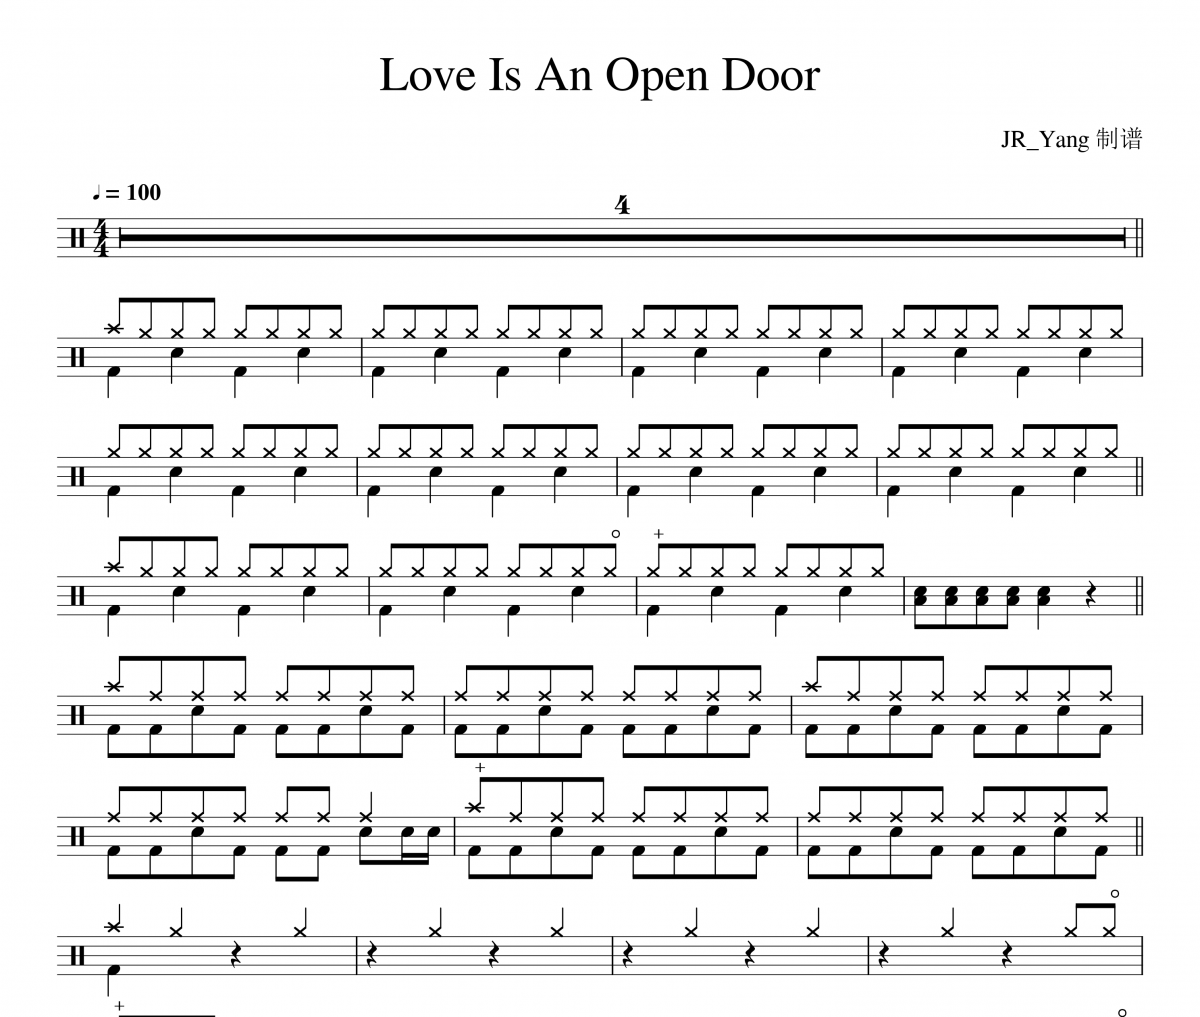 Santino Fontana/Kristen Bell-Love Is An Open Door架子鼓谱爵士鼓曲谱